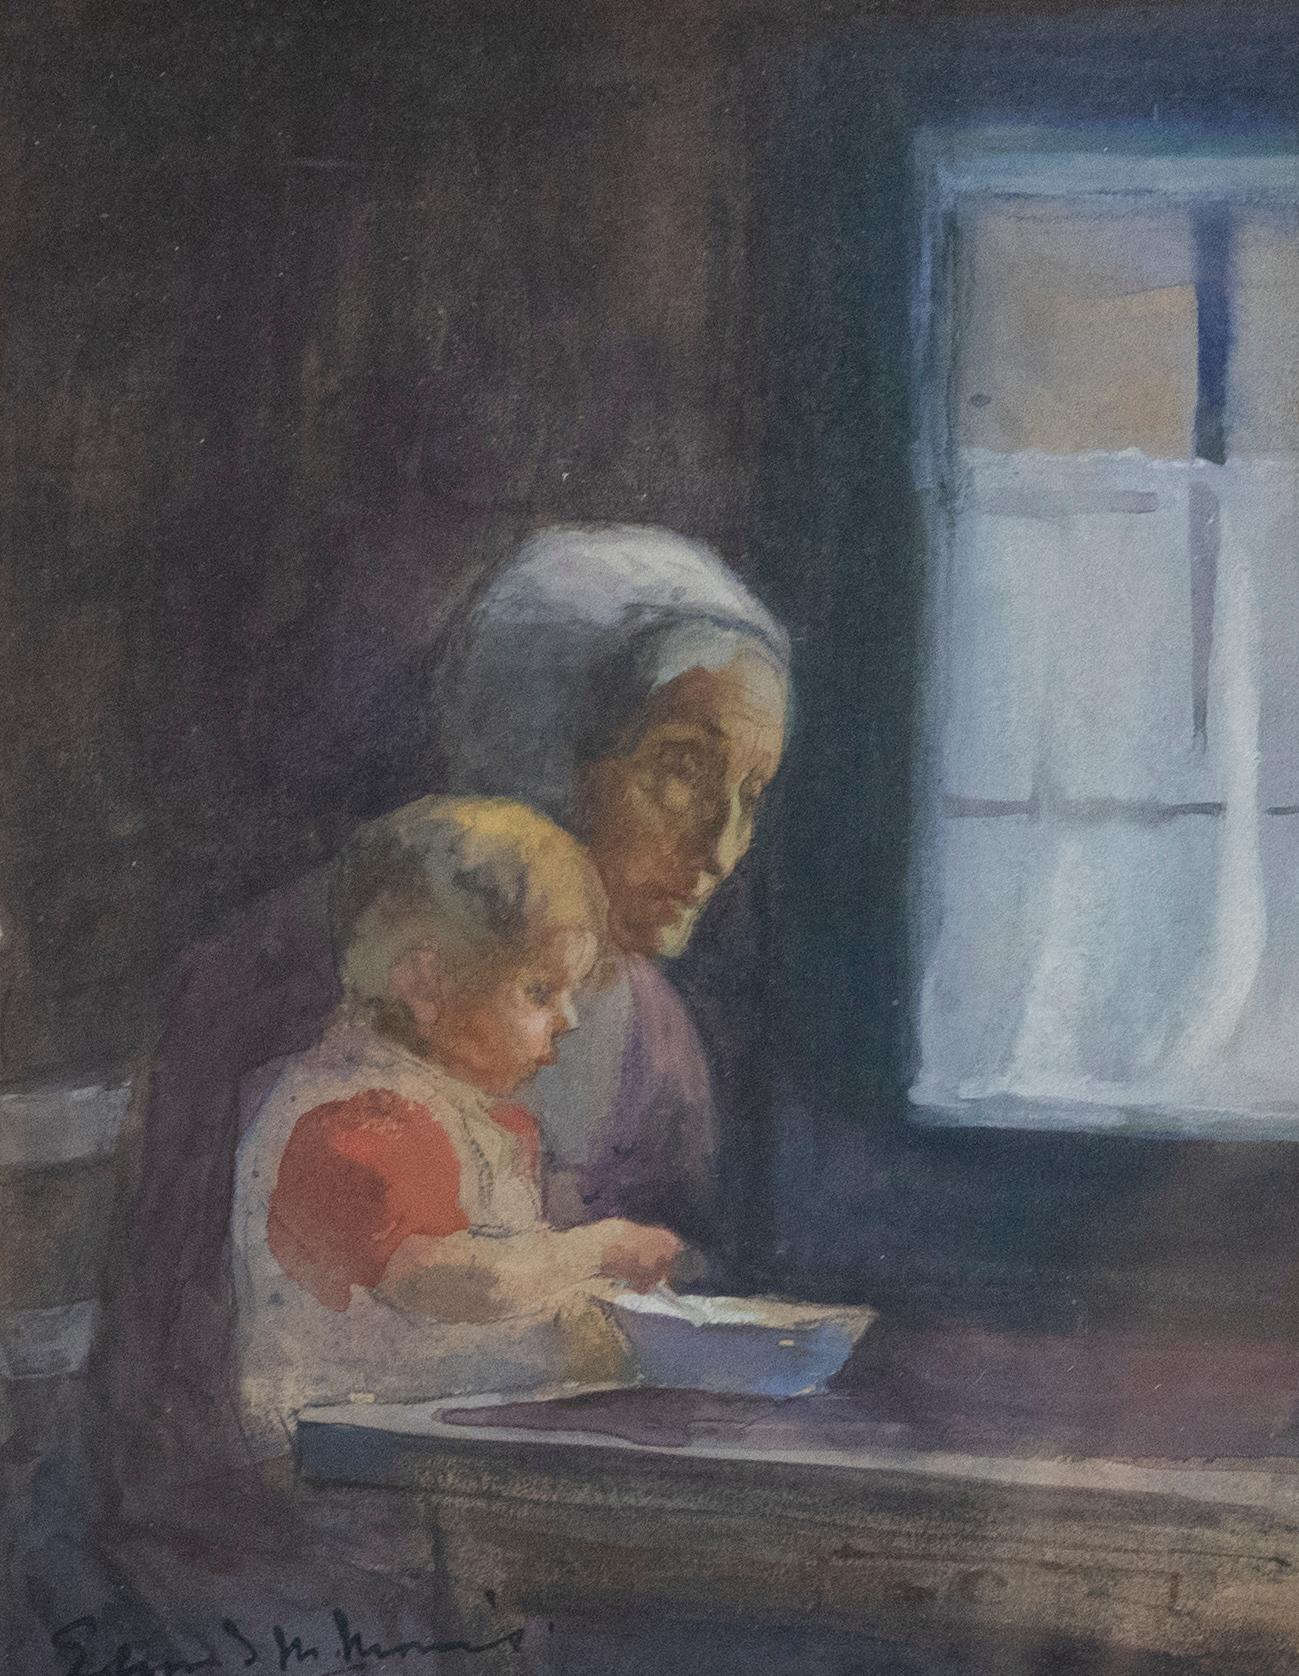 Edmund M. Morris - 1895, Aquarelle, déjeuner avec grand-mère - Art de Unknown